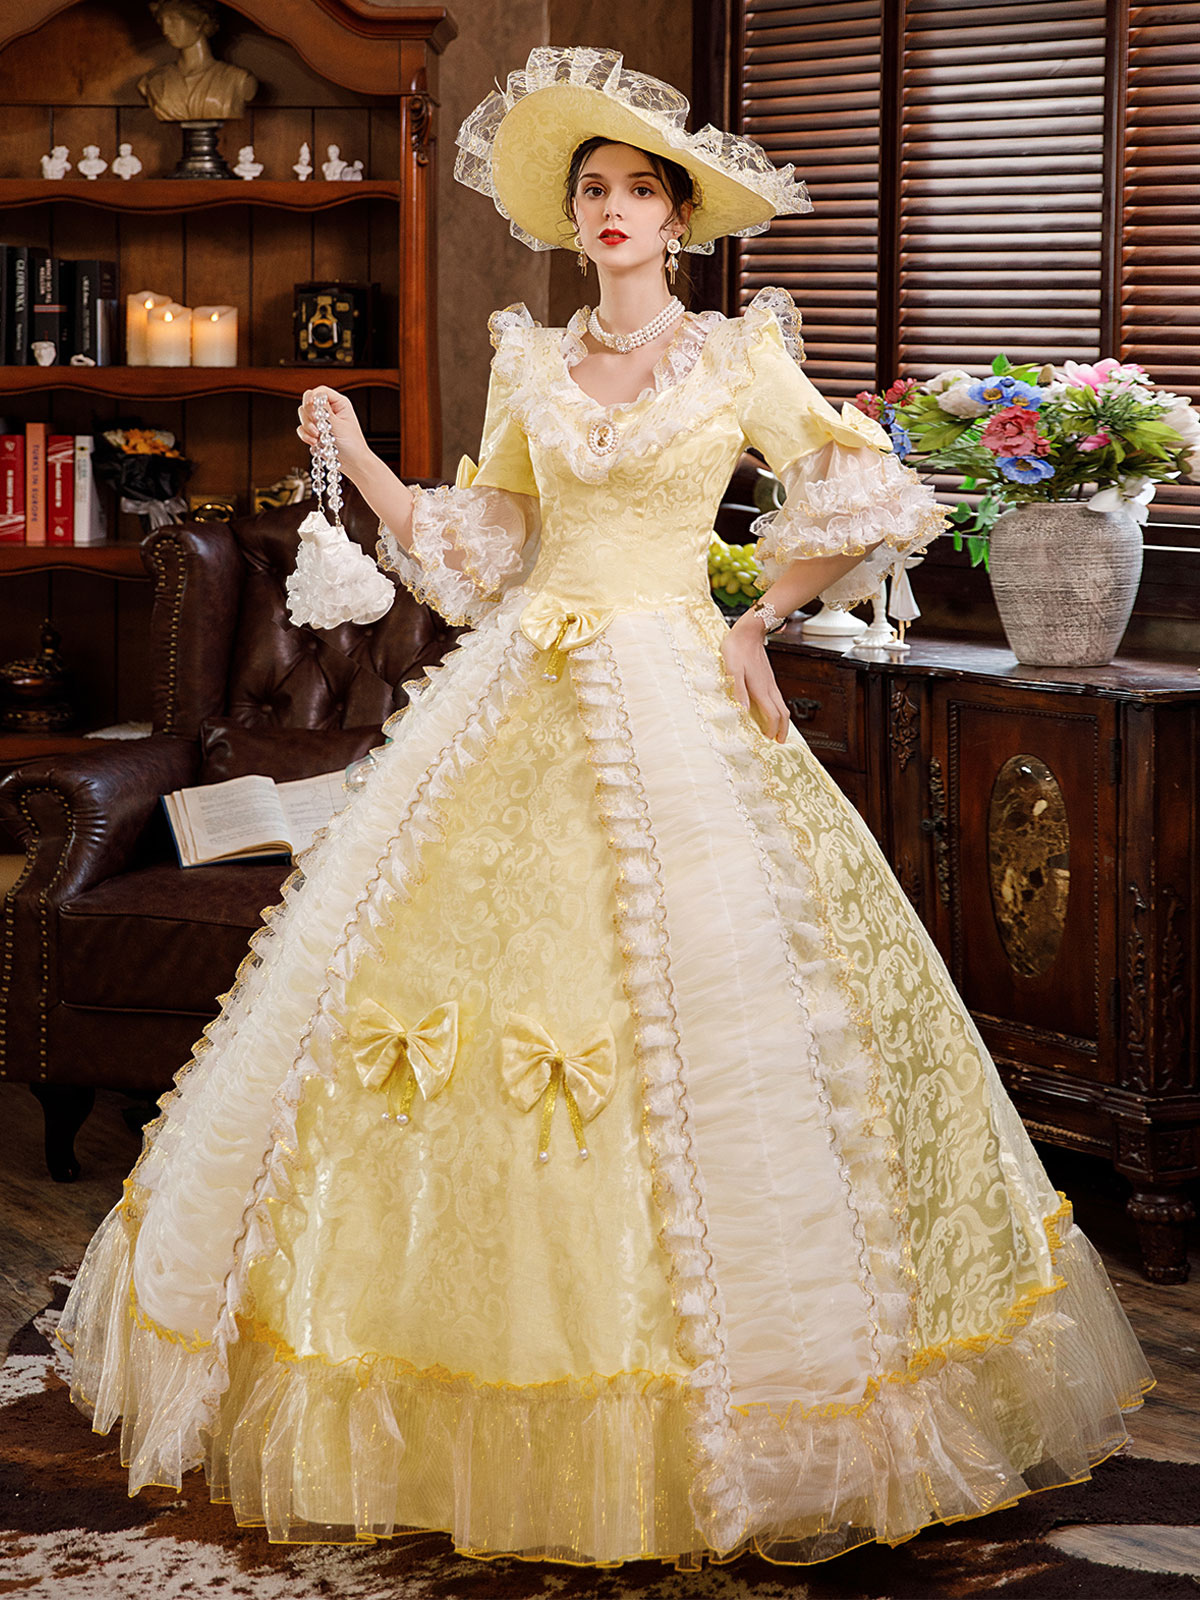 中世 ドレス 女性用 プリンセス 貴族ドレス ホワイト 半袖 バロック風 祝日 レトロ ヨーロッパ 宮廷風 中世 ドレス・貴族ドレス